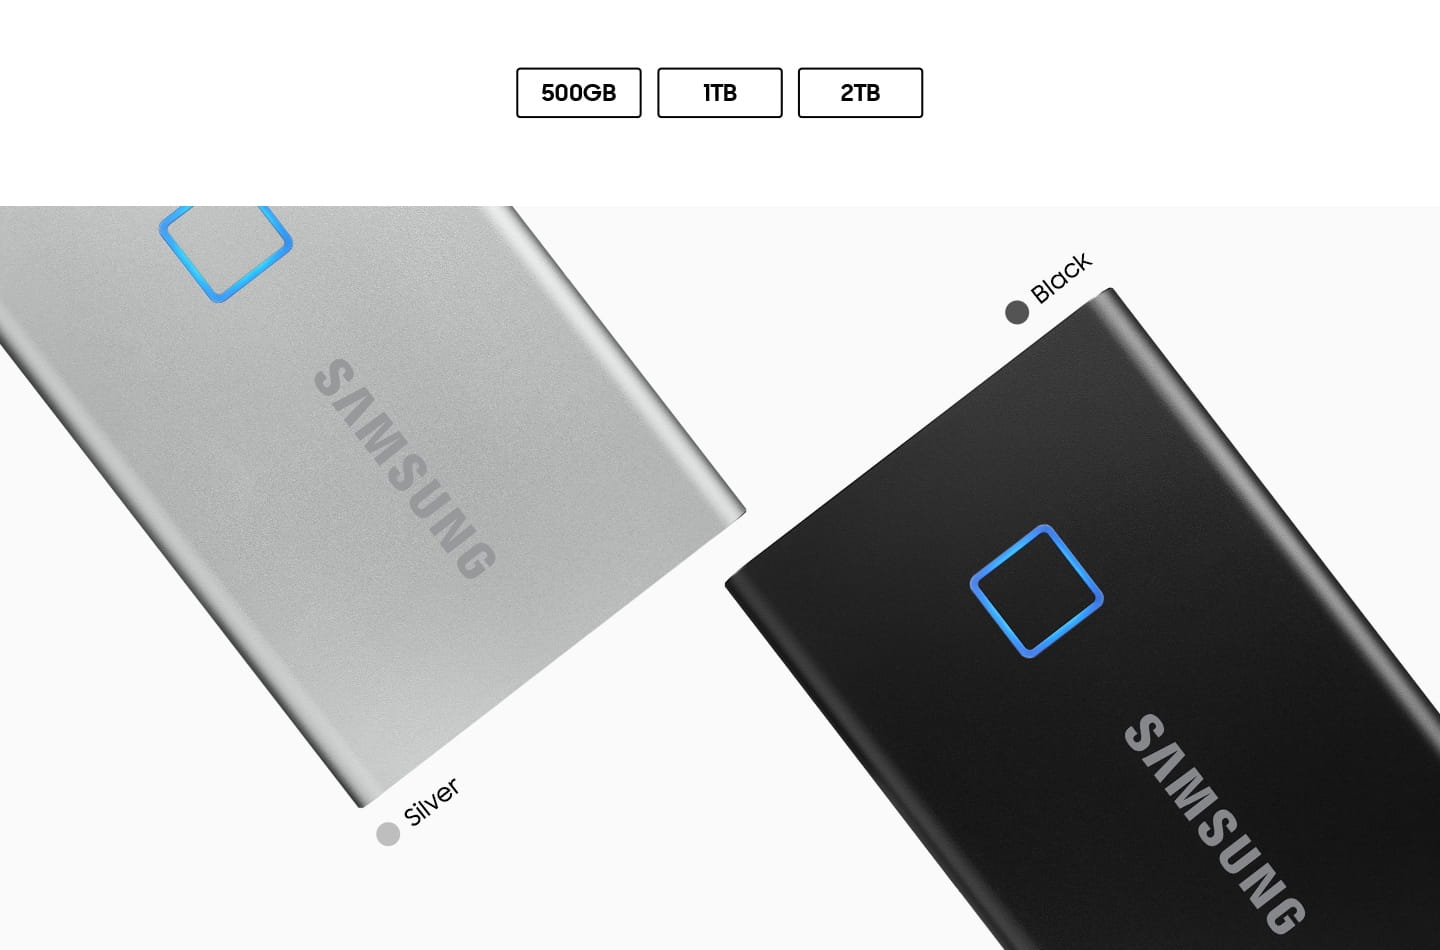 Ổ cứng di động SSD Samsung T7 Touch 1TB USB 3.2 - Đen